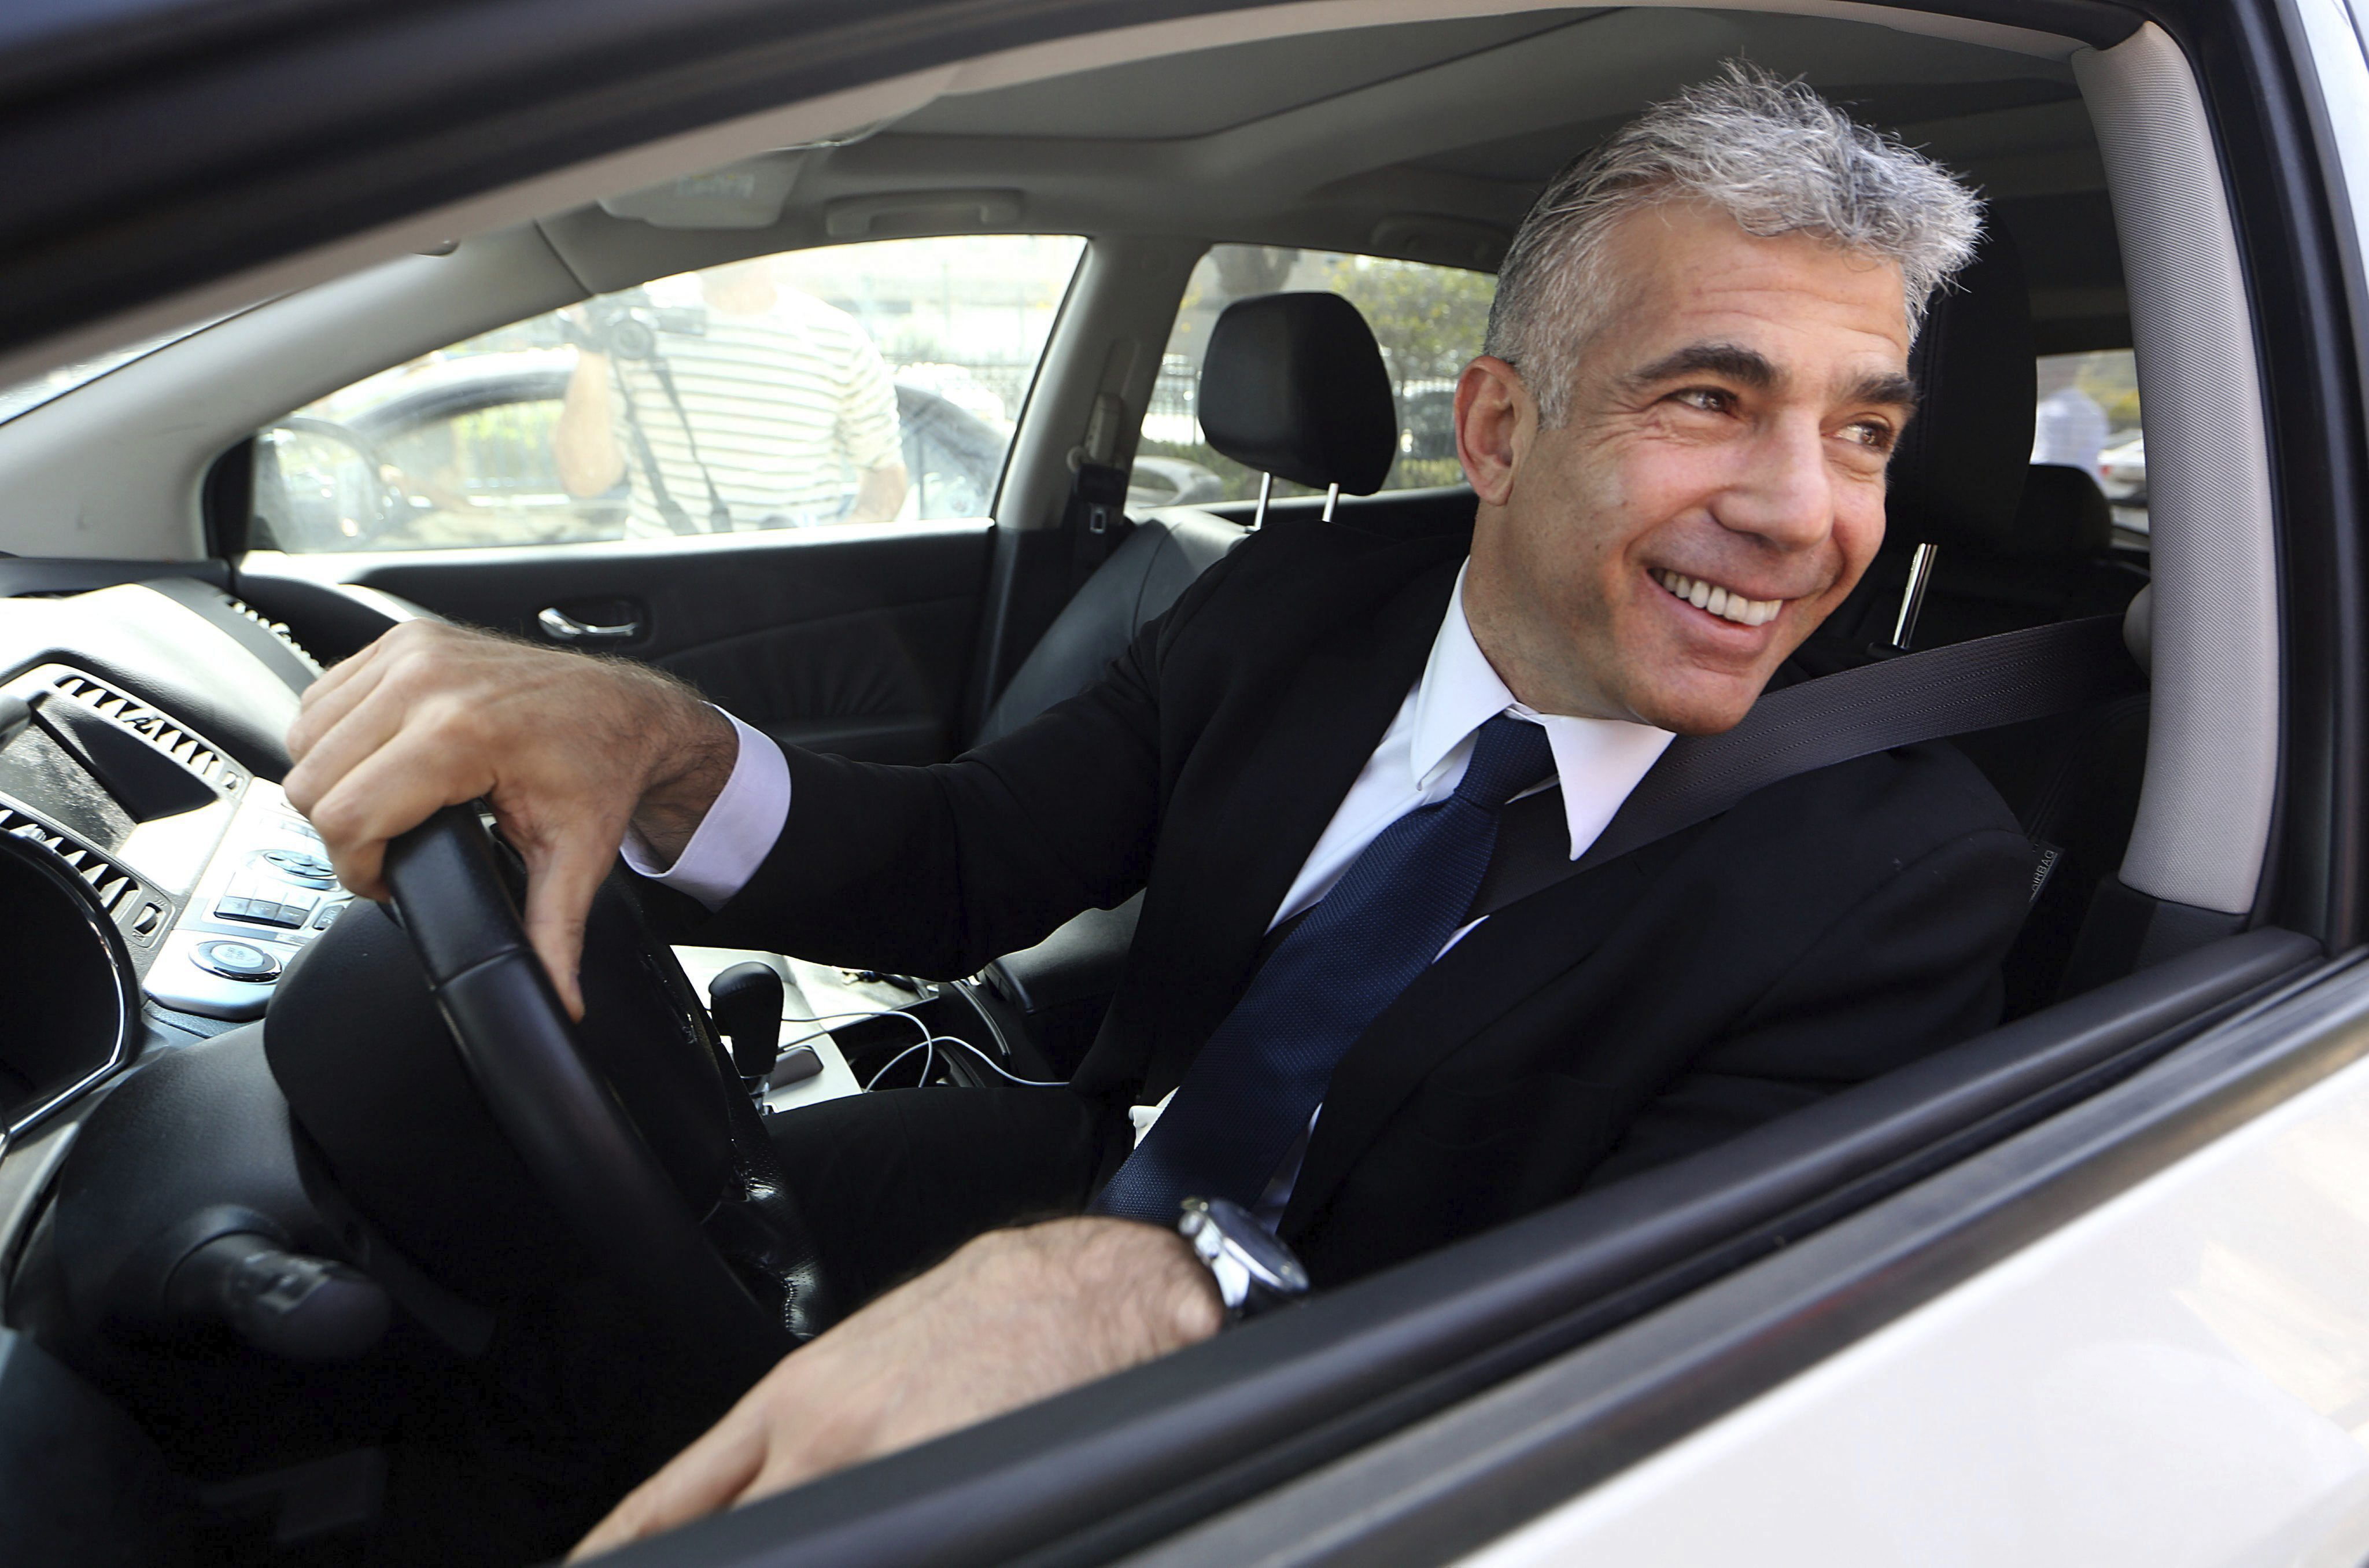 Lapid, de 58 años, conduce su automóvil y se presenta como un político versátil, capaz de dialogar y negociar con cualquiera (EFE/Abir Sultan)
